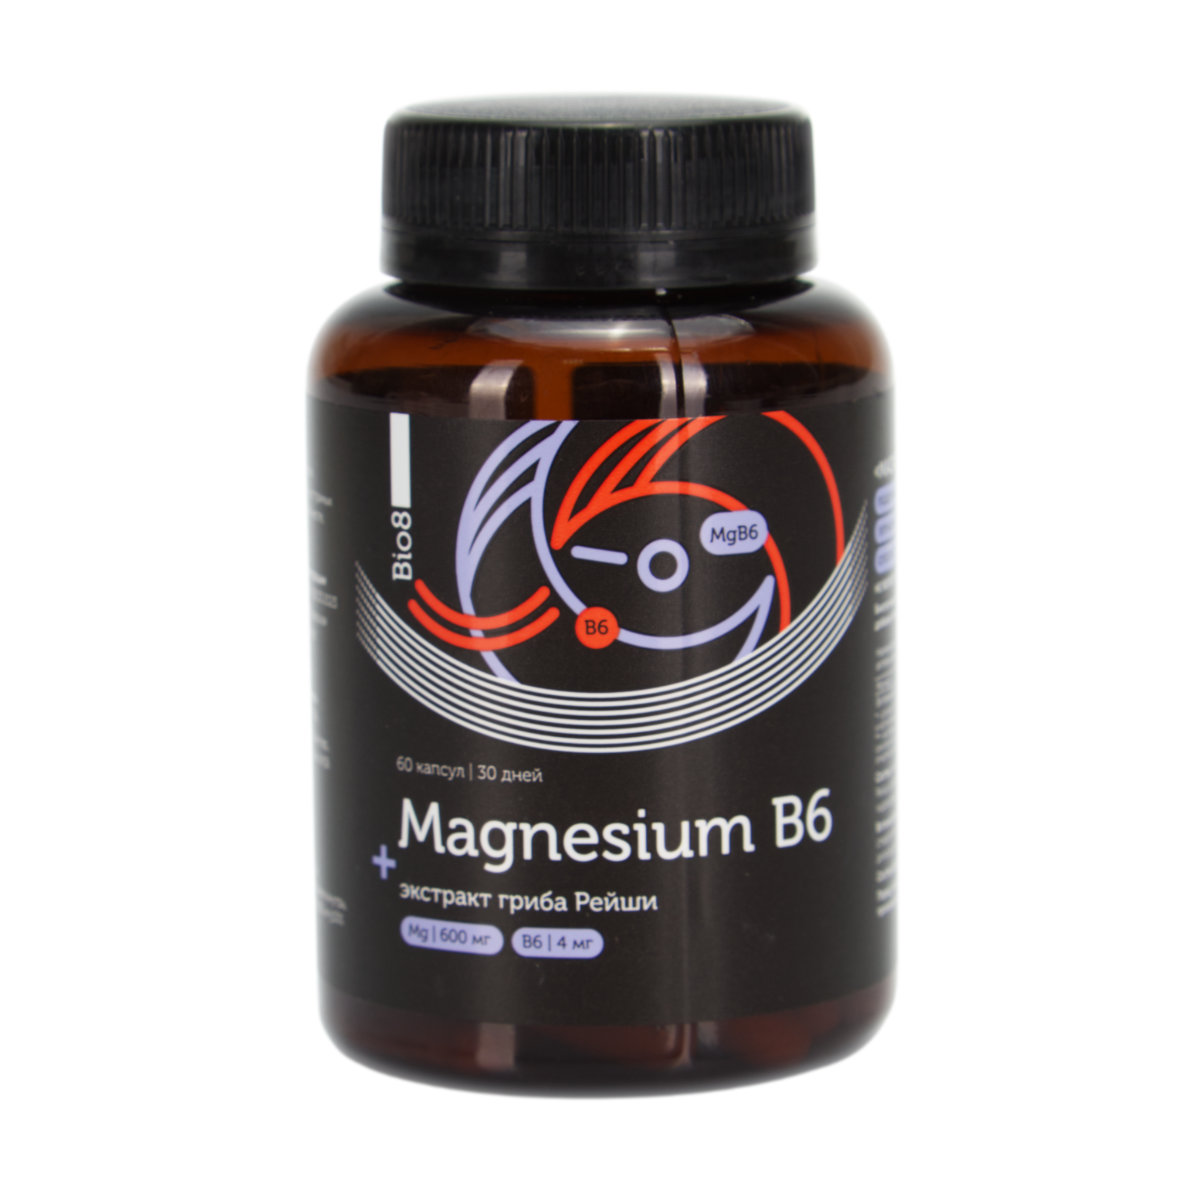 цена Магнезиум B6 + экстракт гриба Рейши Bio8, капсулы (60 шт.)